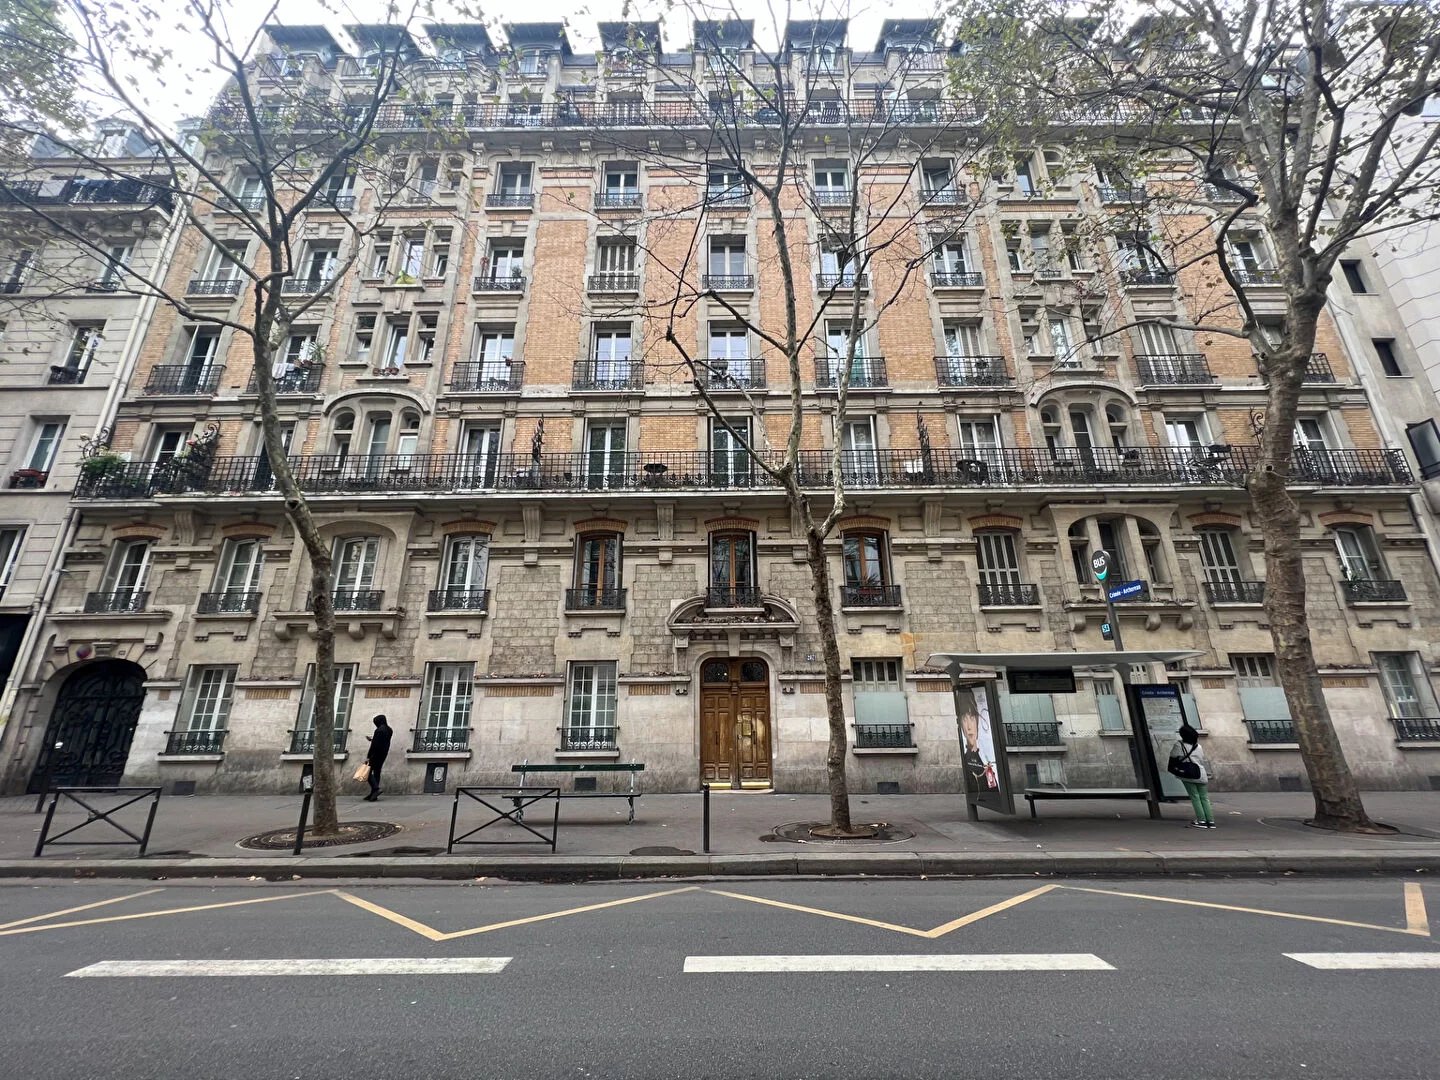 EXCLUSIVEMENT CHEZ COMEBACK Immobilier-Appartement PARIS 19ème au 7ème étage sans ascenseur - 30.14 m²